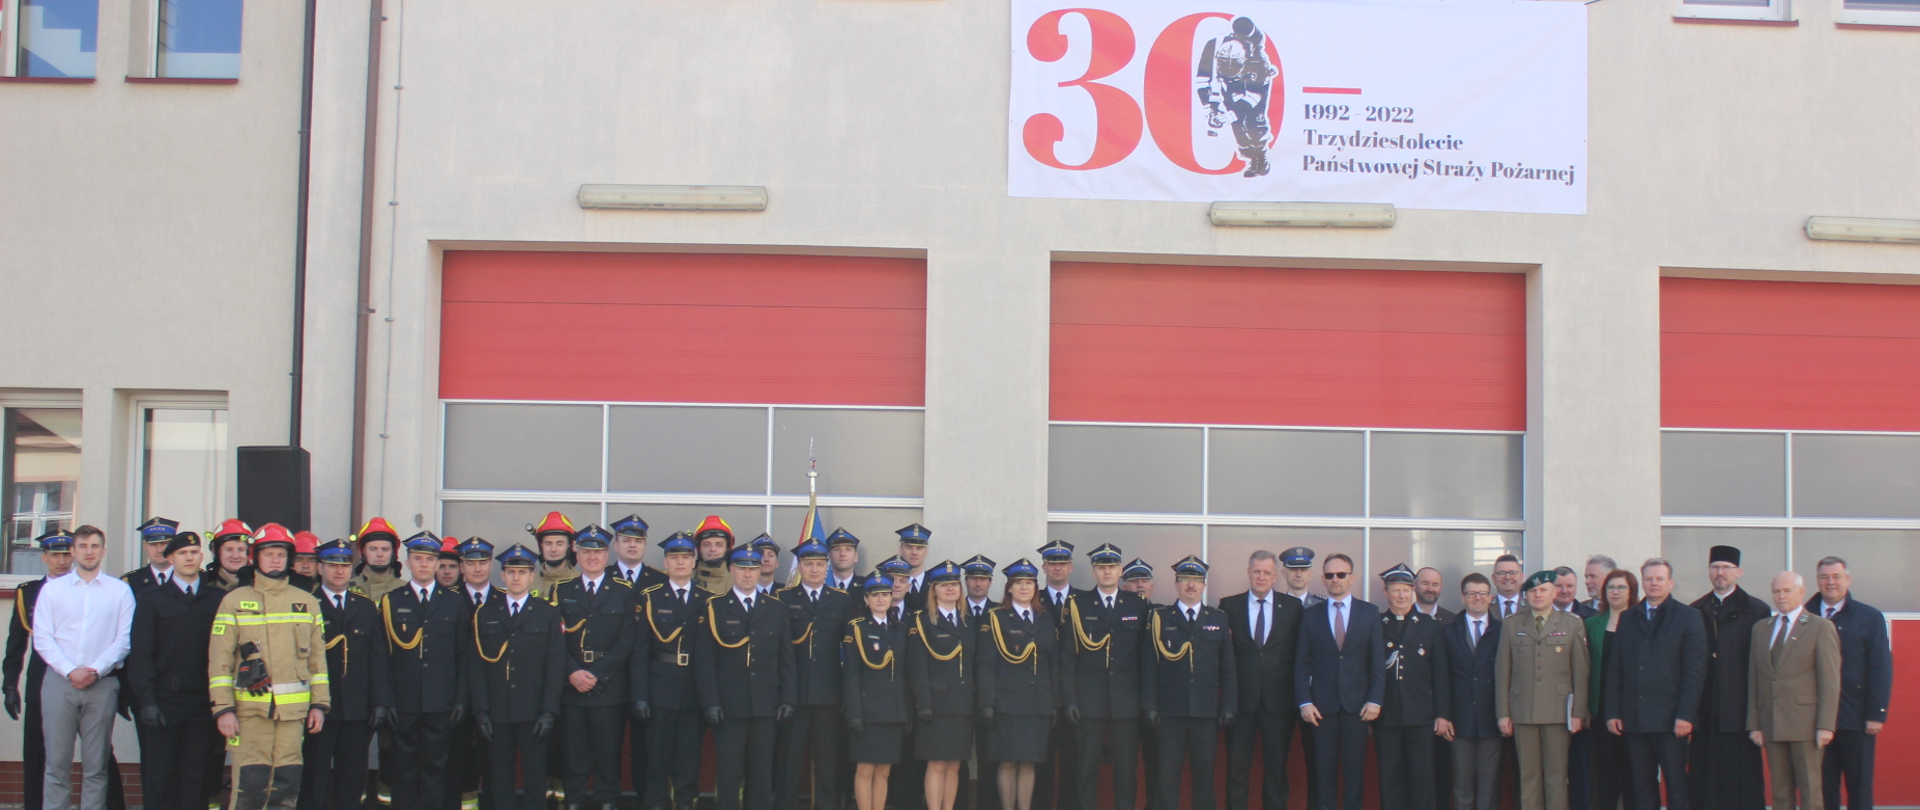 Zdjęcie grupowe podczas uroczystości powołania komendanta powiatowego, na budynku wisi biały baner 30lecie Państwowej Straży Pożarnej